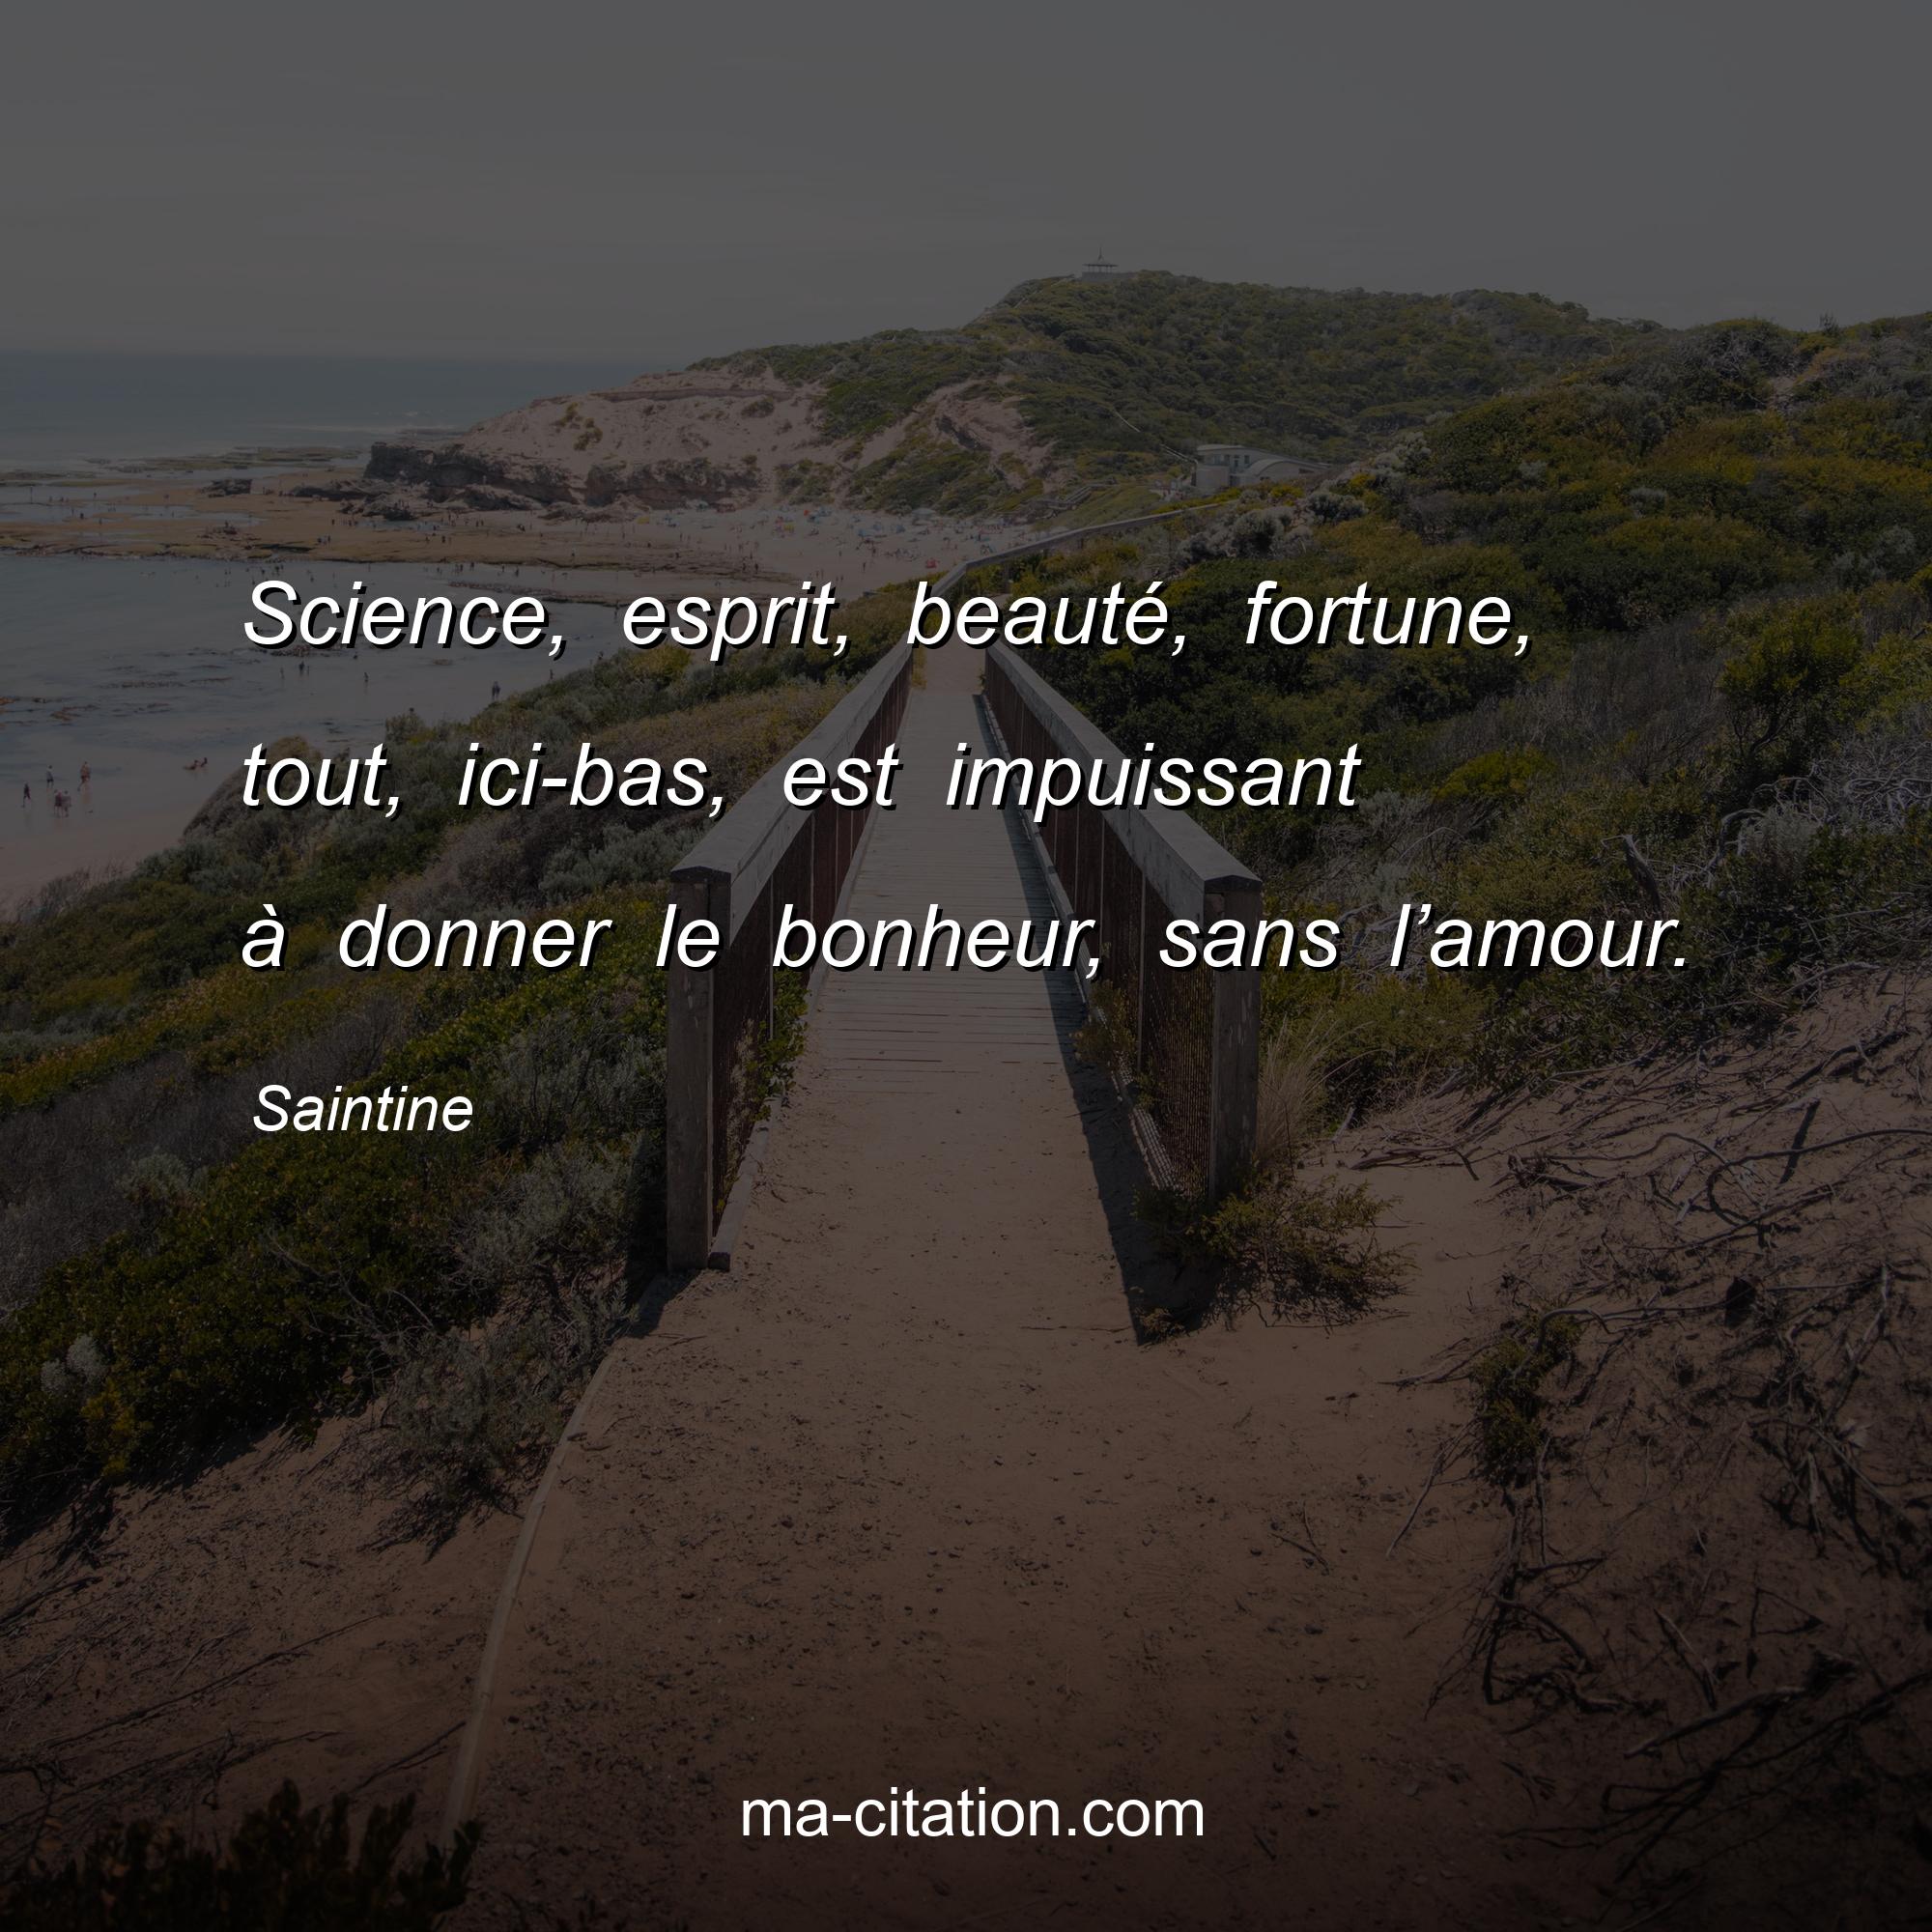 Saintine : Science, esprit, beauté, fortune, tout, ici-bas, est impuissant à donner le bonheur, sans l’amour.